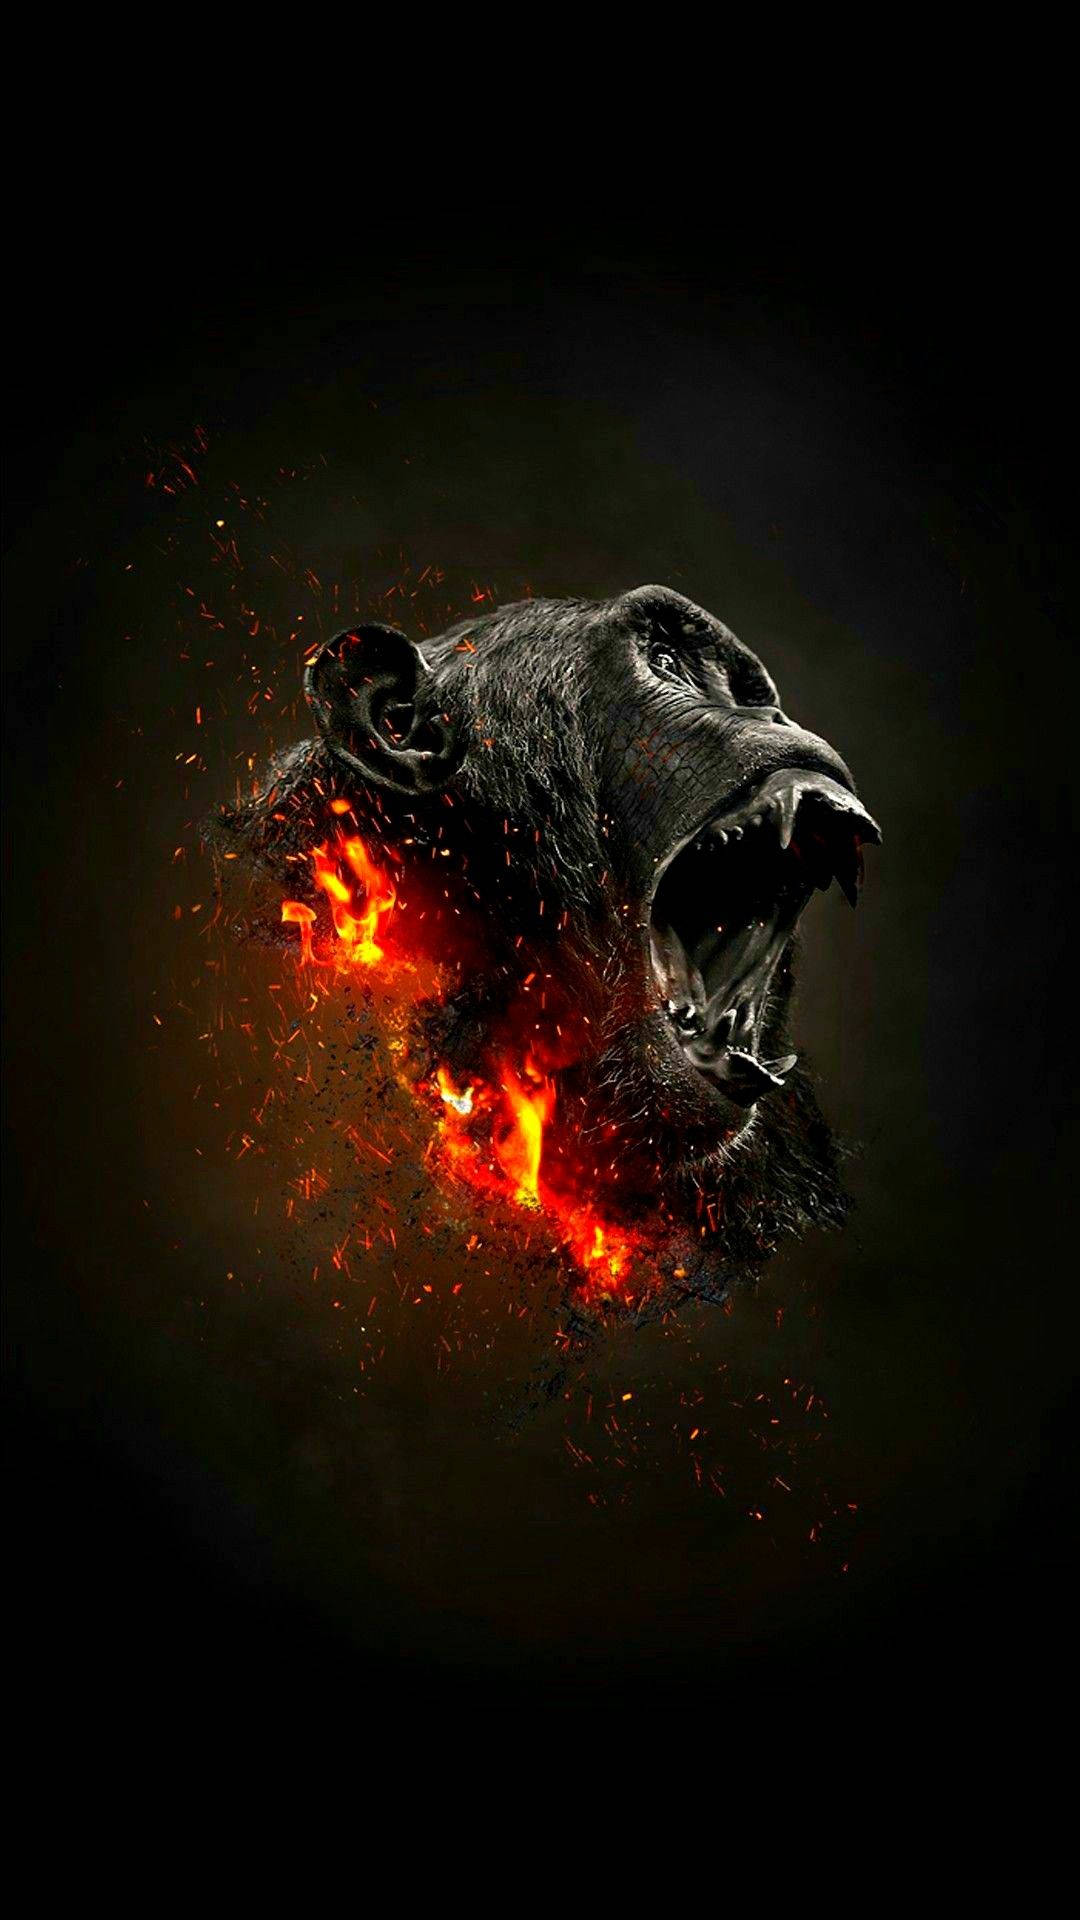 Gorilla's Head In Blazing Fire Wallpaper